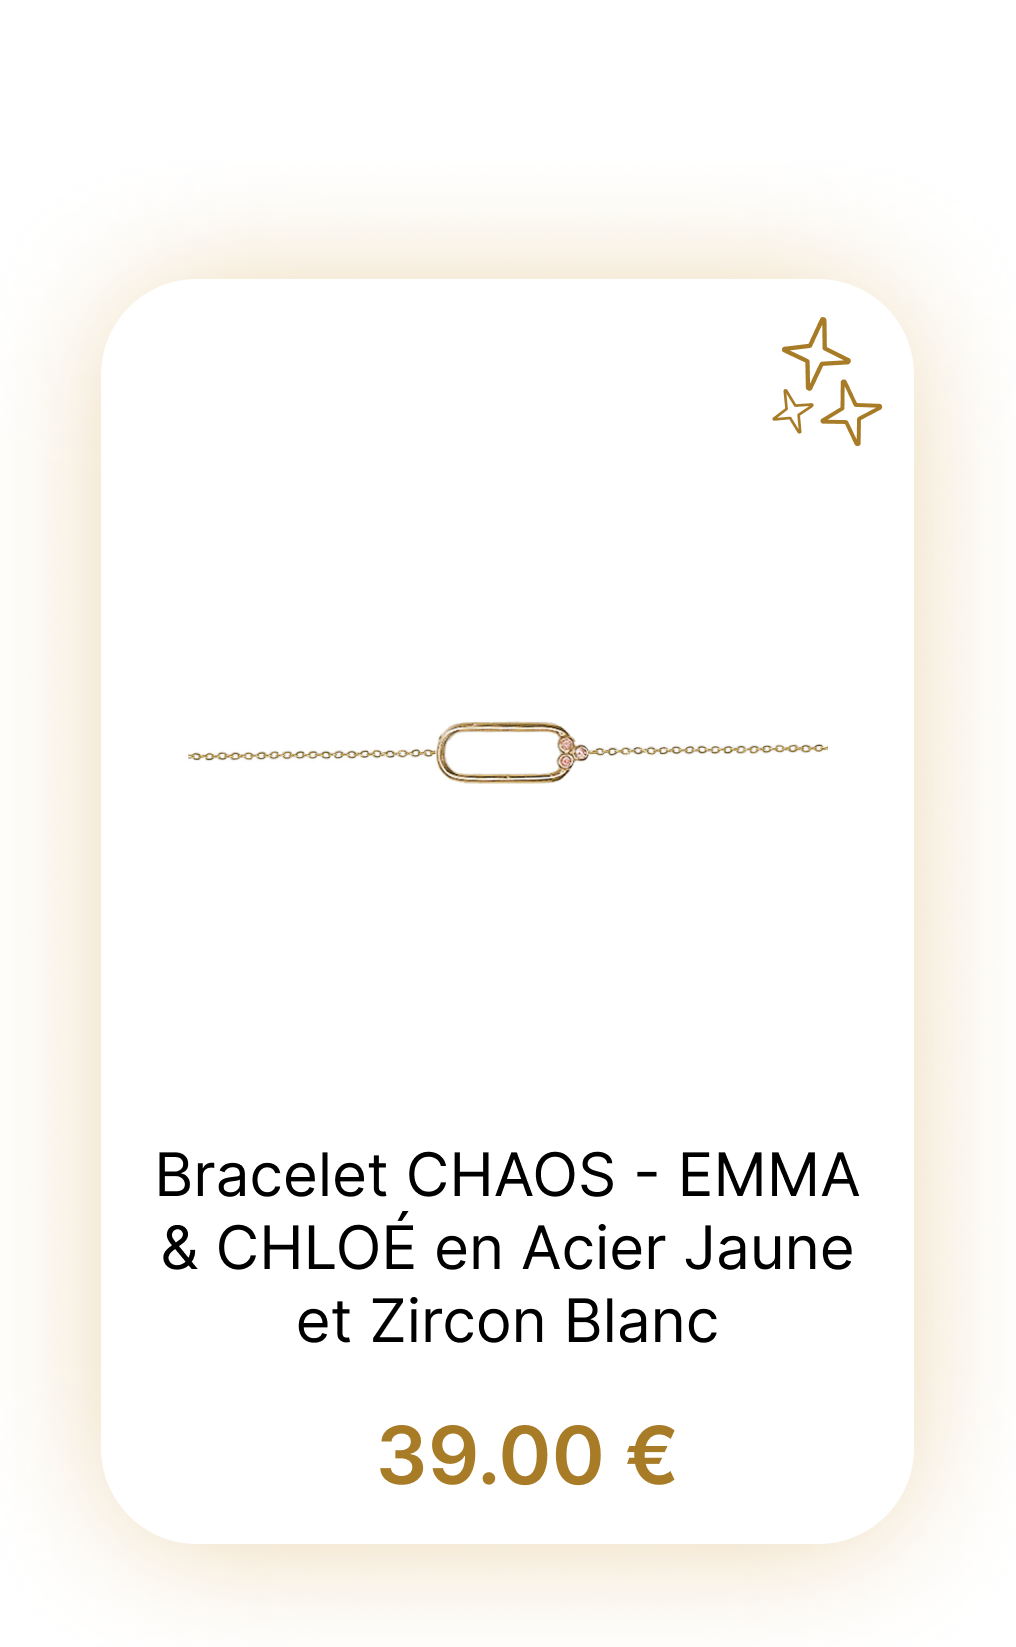 Bracelet CHAOS - EMMA & CHLOÉ en Acier Jaune et Zircon Blanc